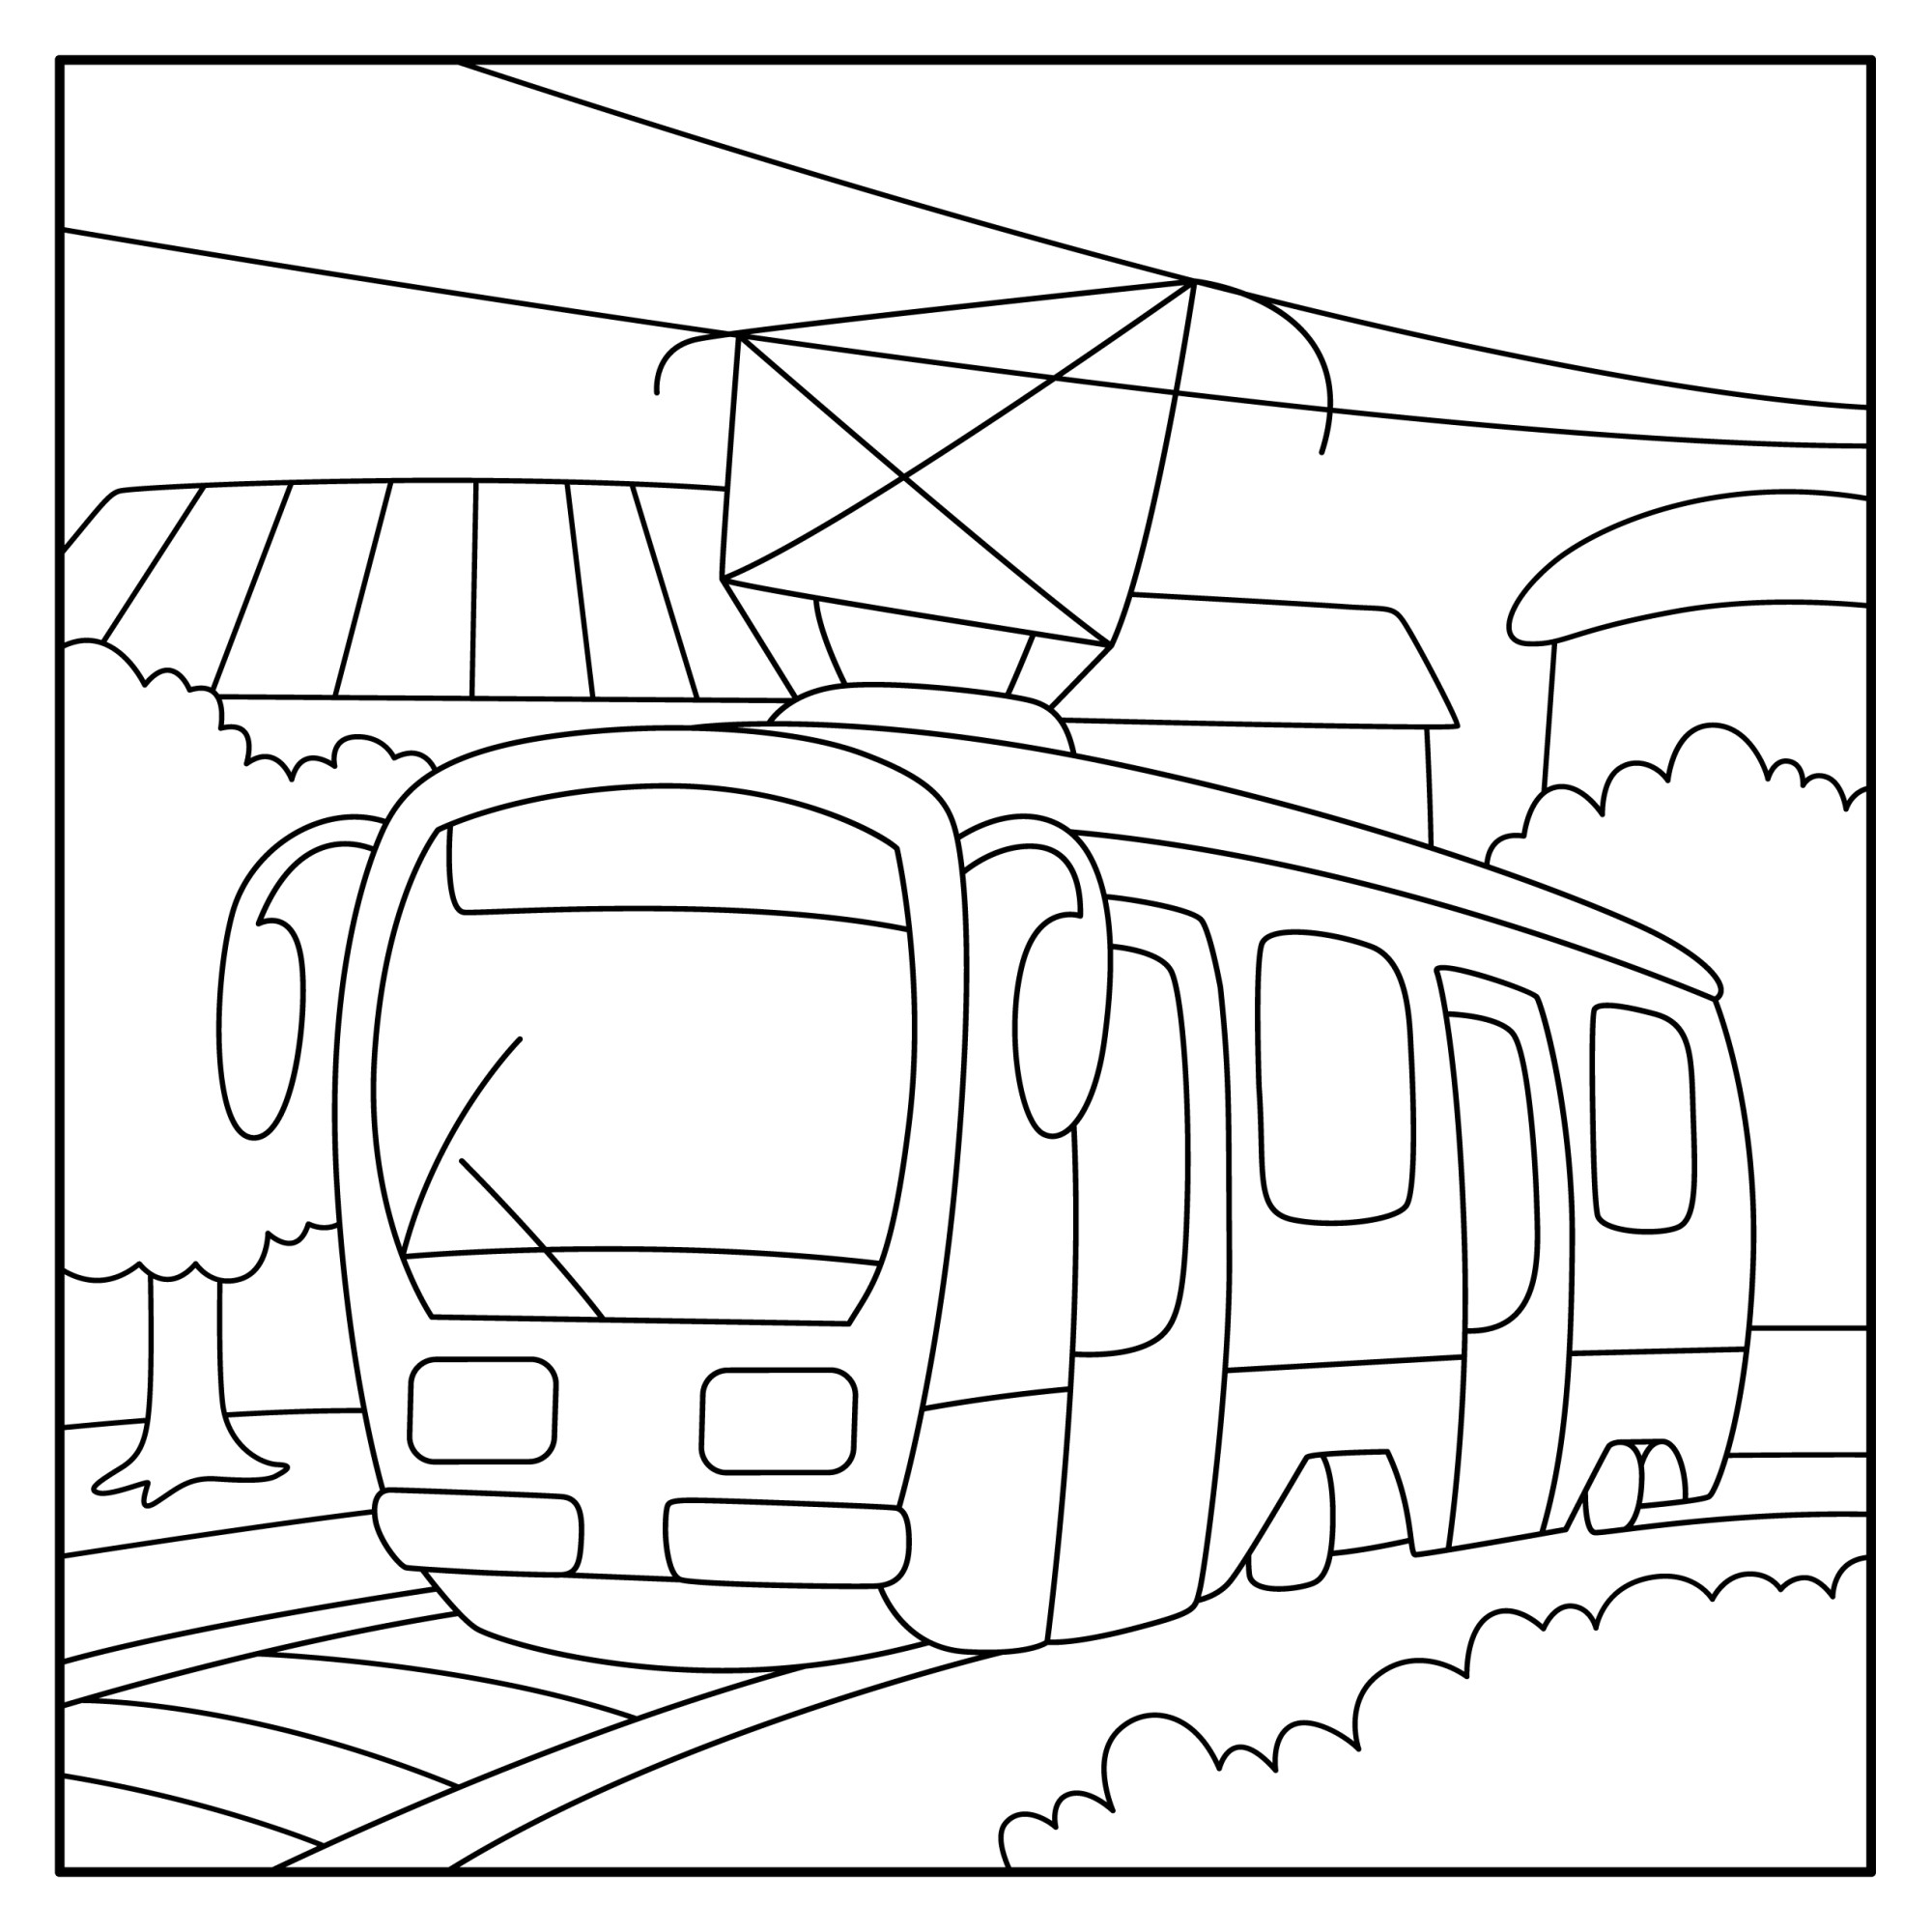 Раскраска для детей: современный трамвай на маршруте